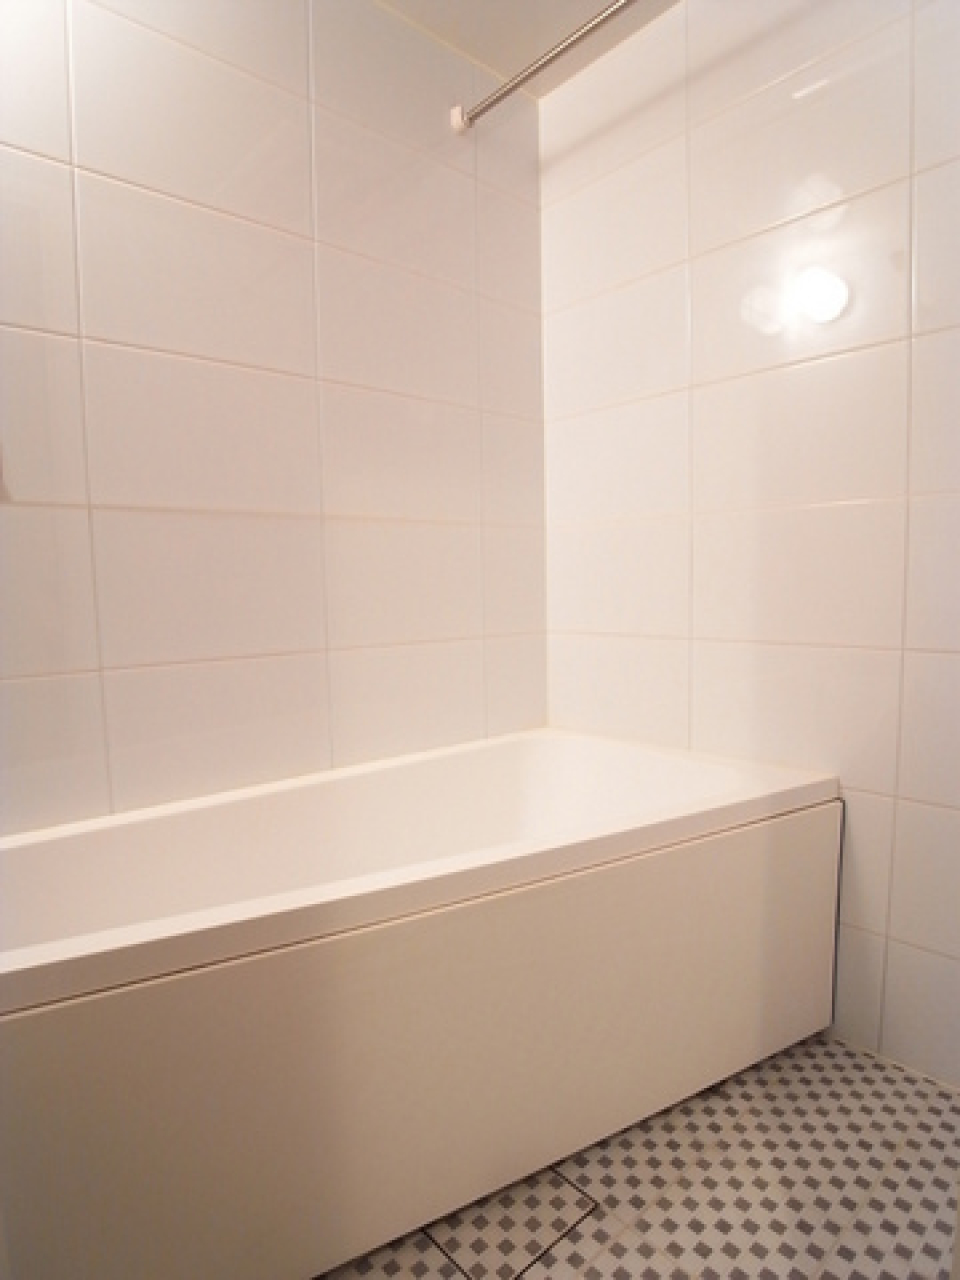 一見シンプルな浴室ですが、ちょっとしたデザインがポップな雰囲気です。